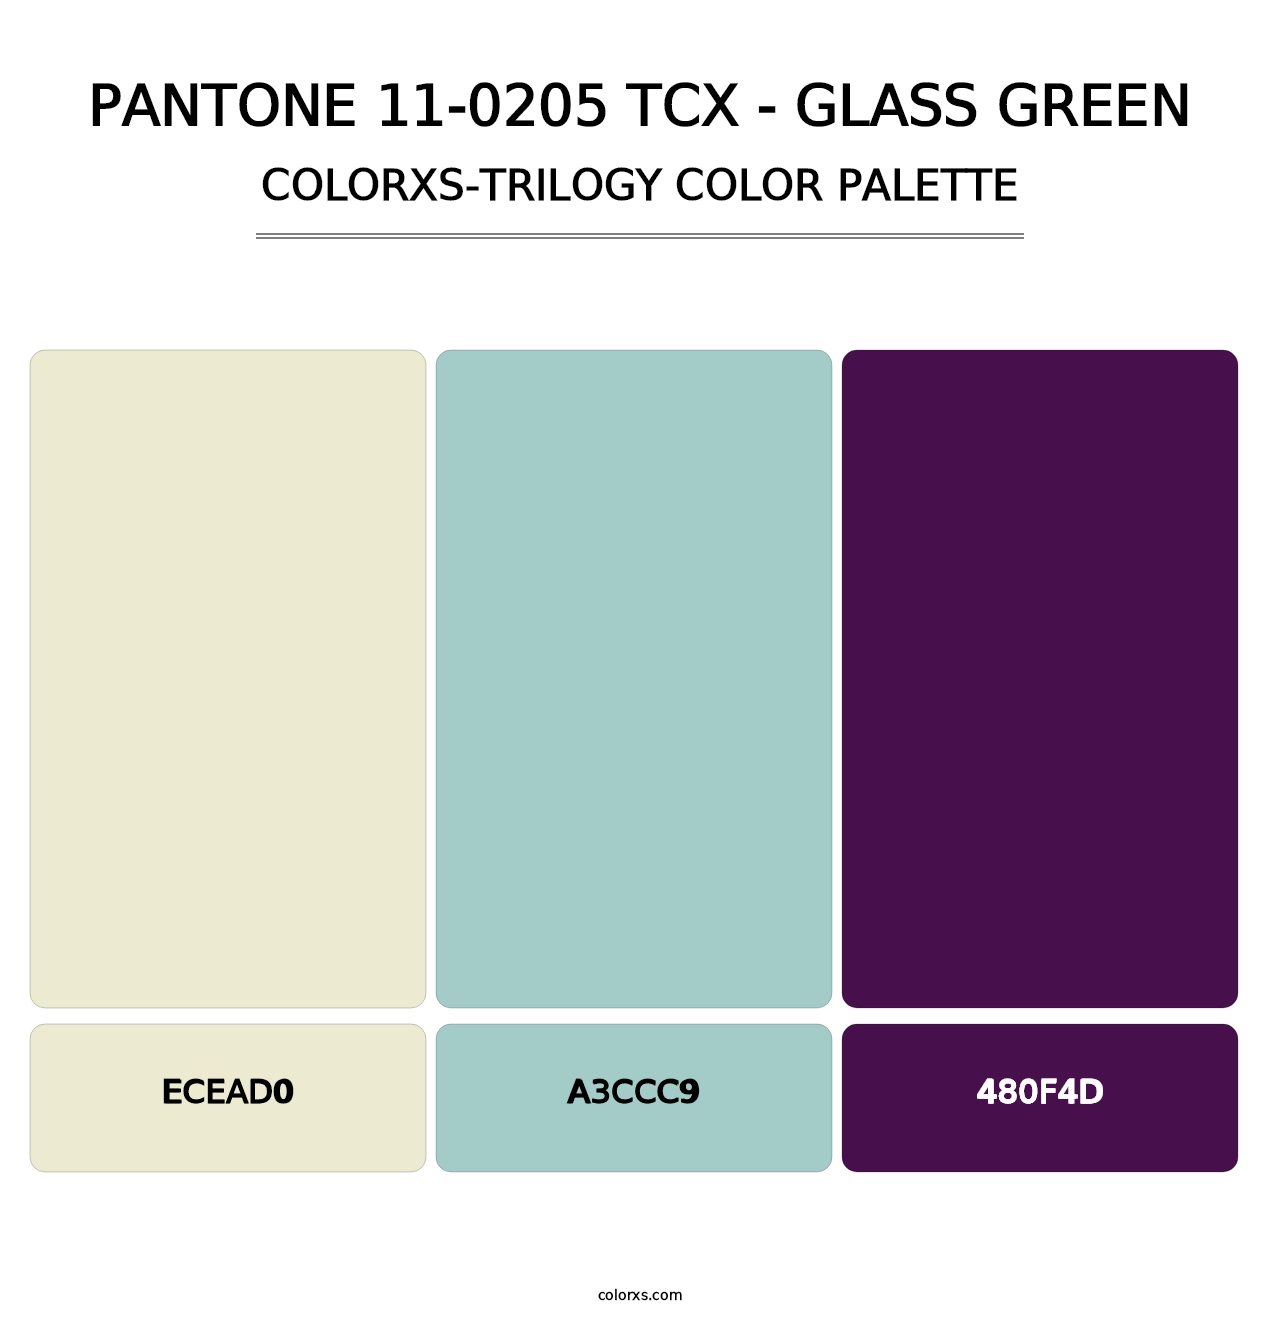 PANTONE 11-0205 TCX - Glass Green - Colorxs Trilogy Palette